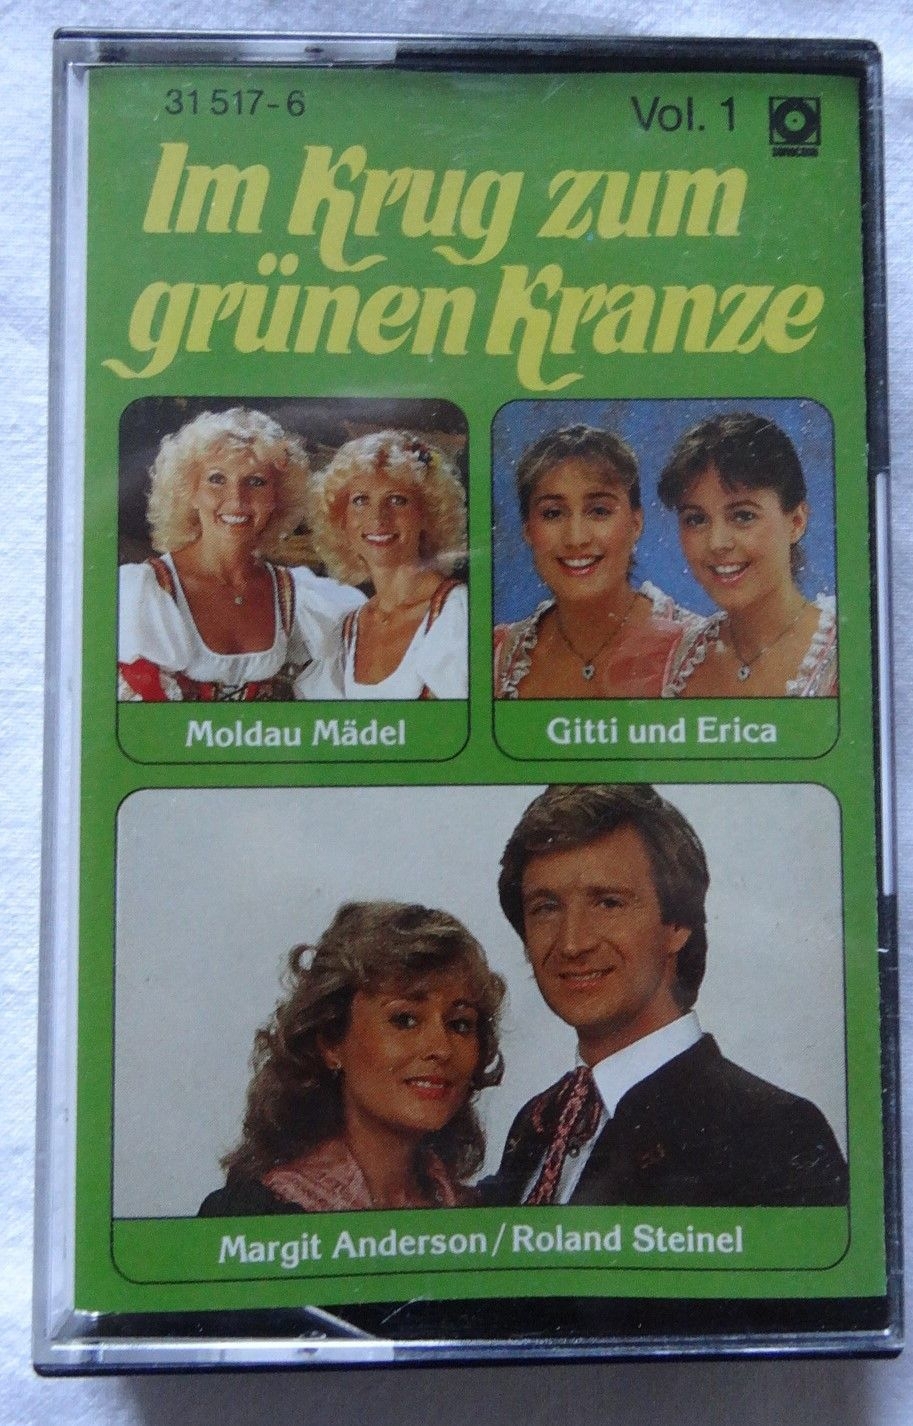 MC Im Krug zum grünen Kranze Vol 1 Sonocord 31517-6 1985 Club-Sonderauflage 1985 Musikkassette Musik